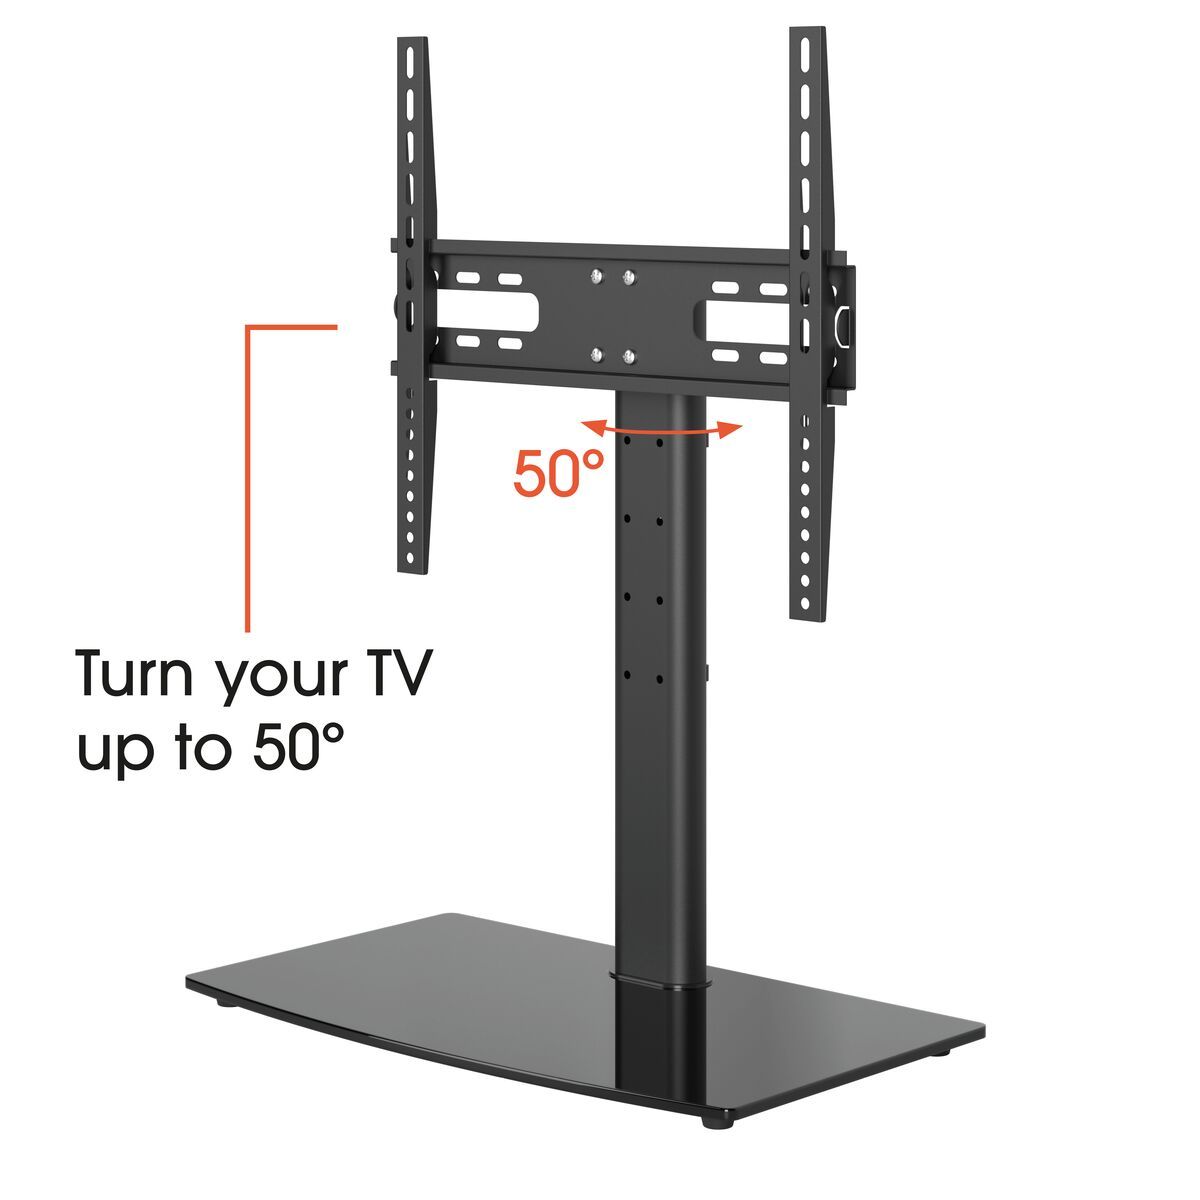 Vogel's MS3085 Tisch-Standfuß TV Halterung - Geeignet für Fernseher von 32 bis 65 Zoll - Bis zu 50° schwenkbar - USP